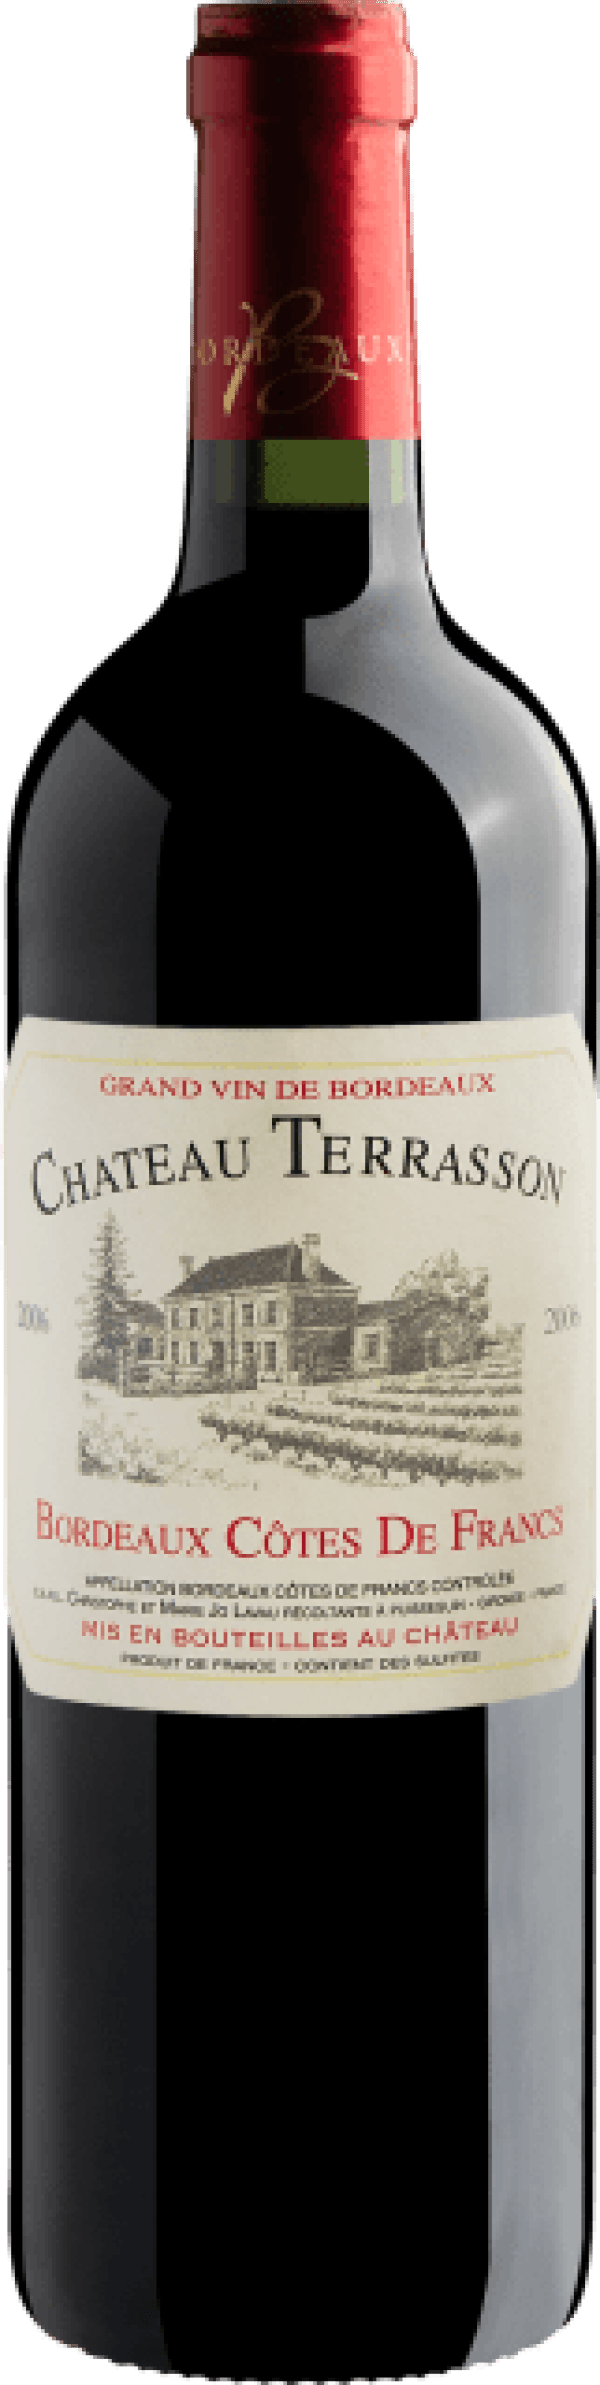 Chateau Terrasson Bordeaux Côtes de Francs AOC 2006